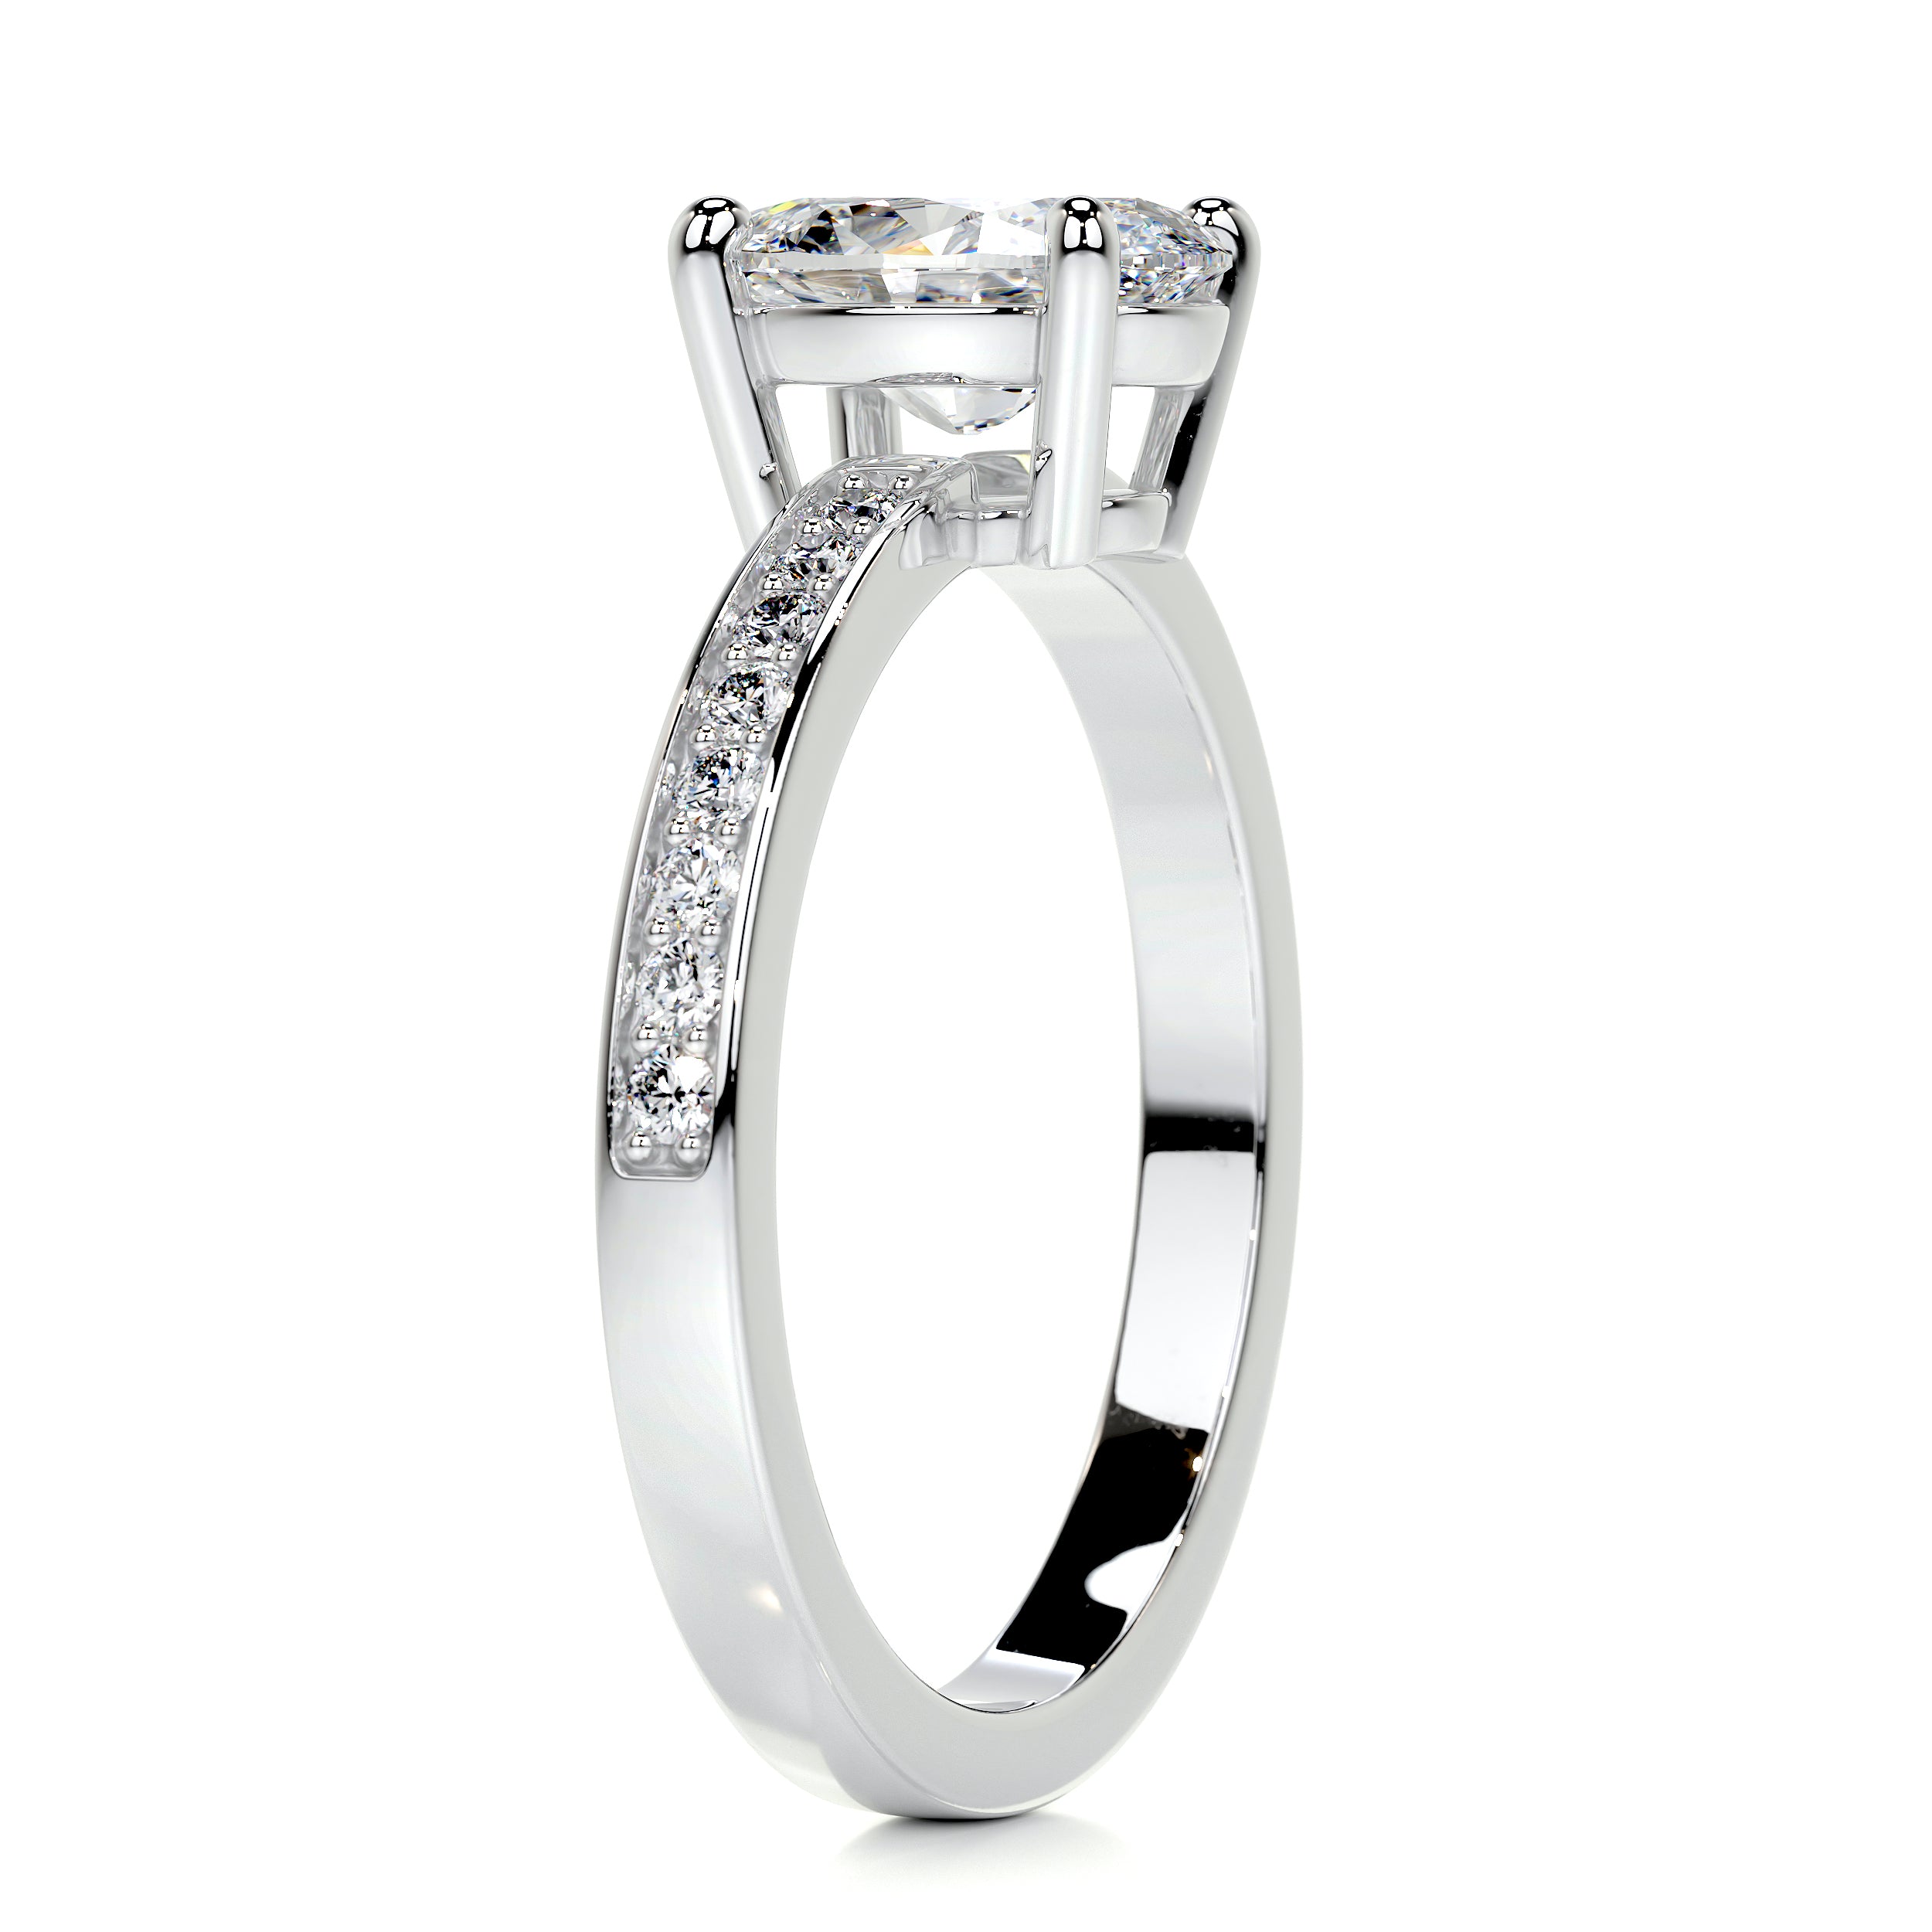 Giselle Diamond Engagement Ring   (1.16 Carat) -14K White Gold